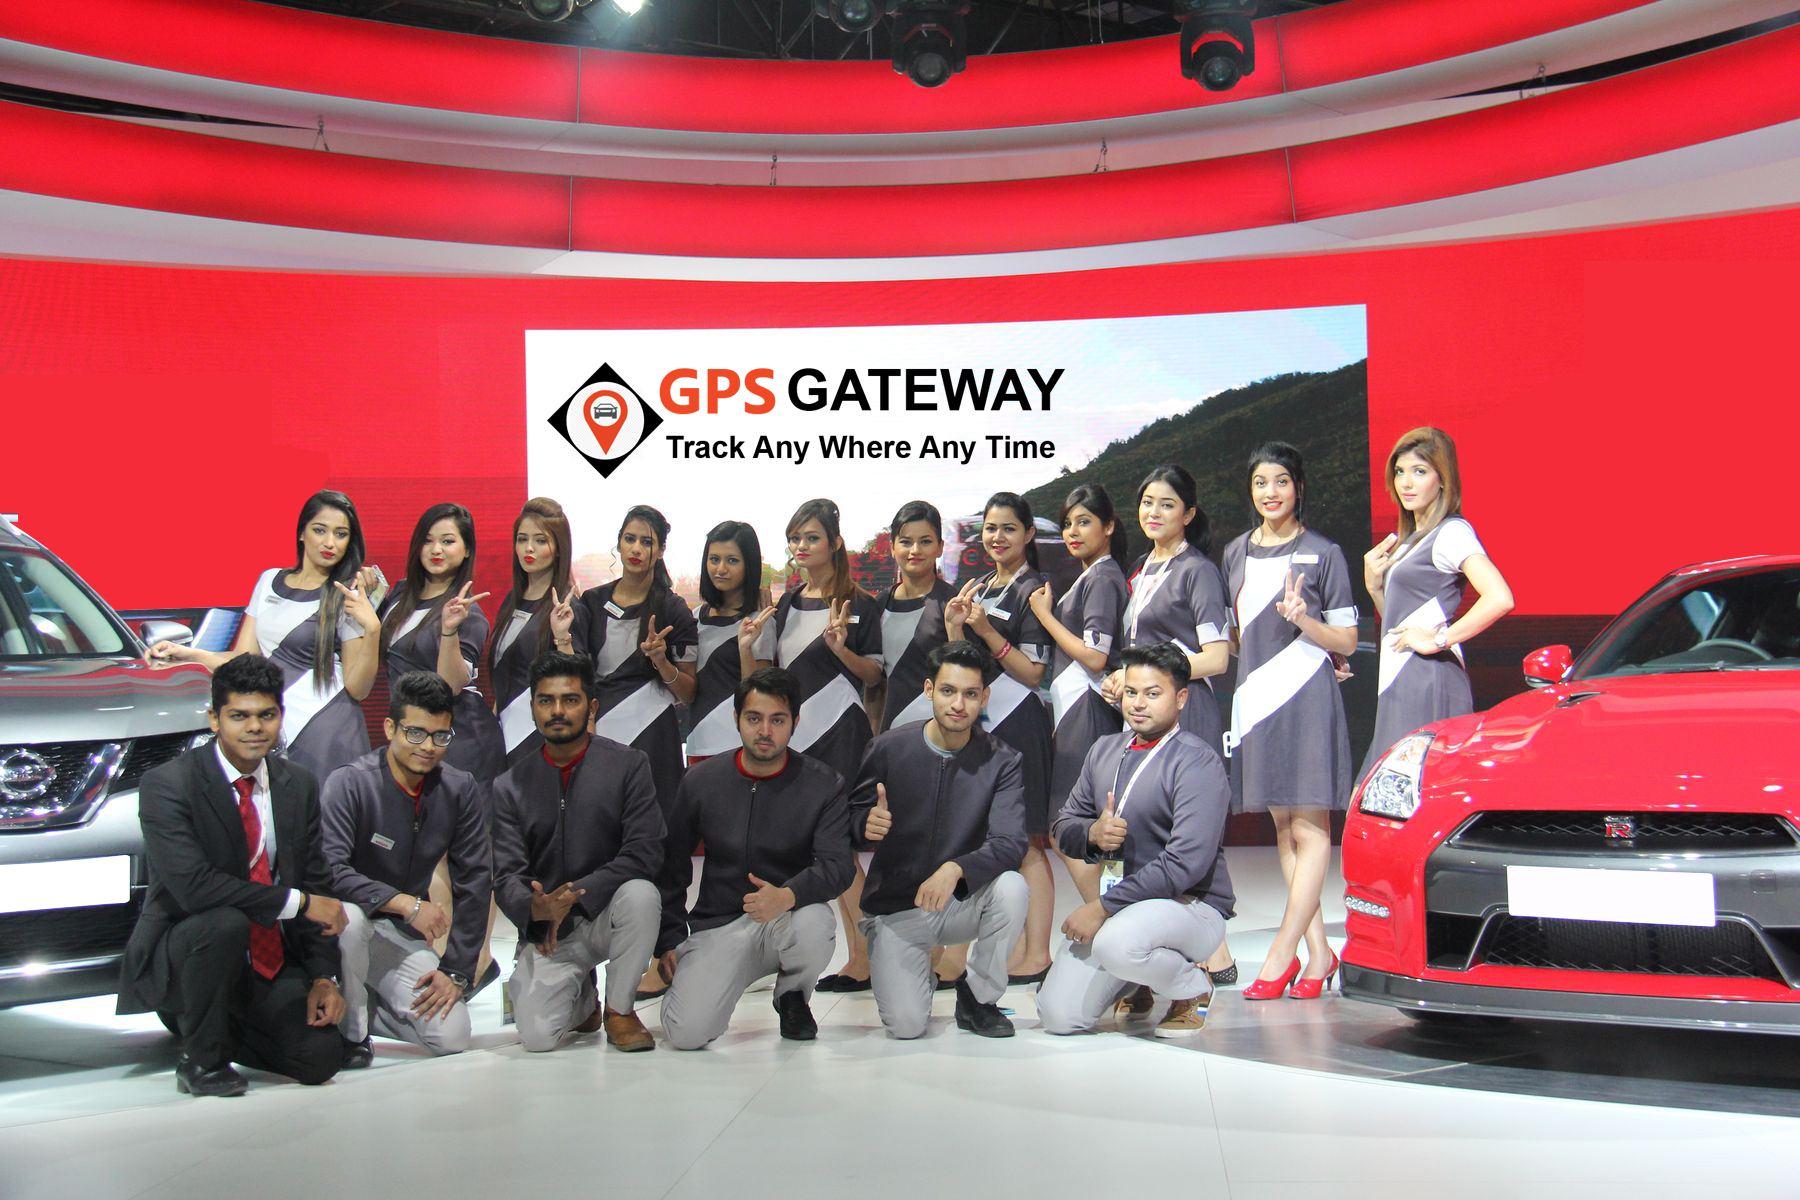 GPS Software provider company